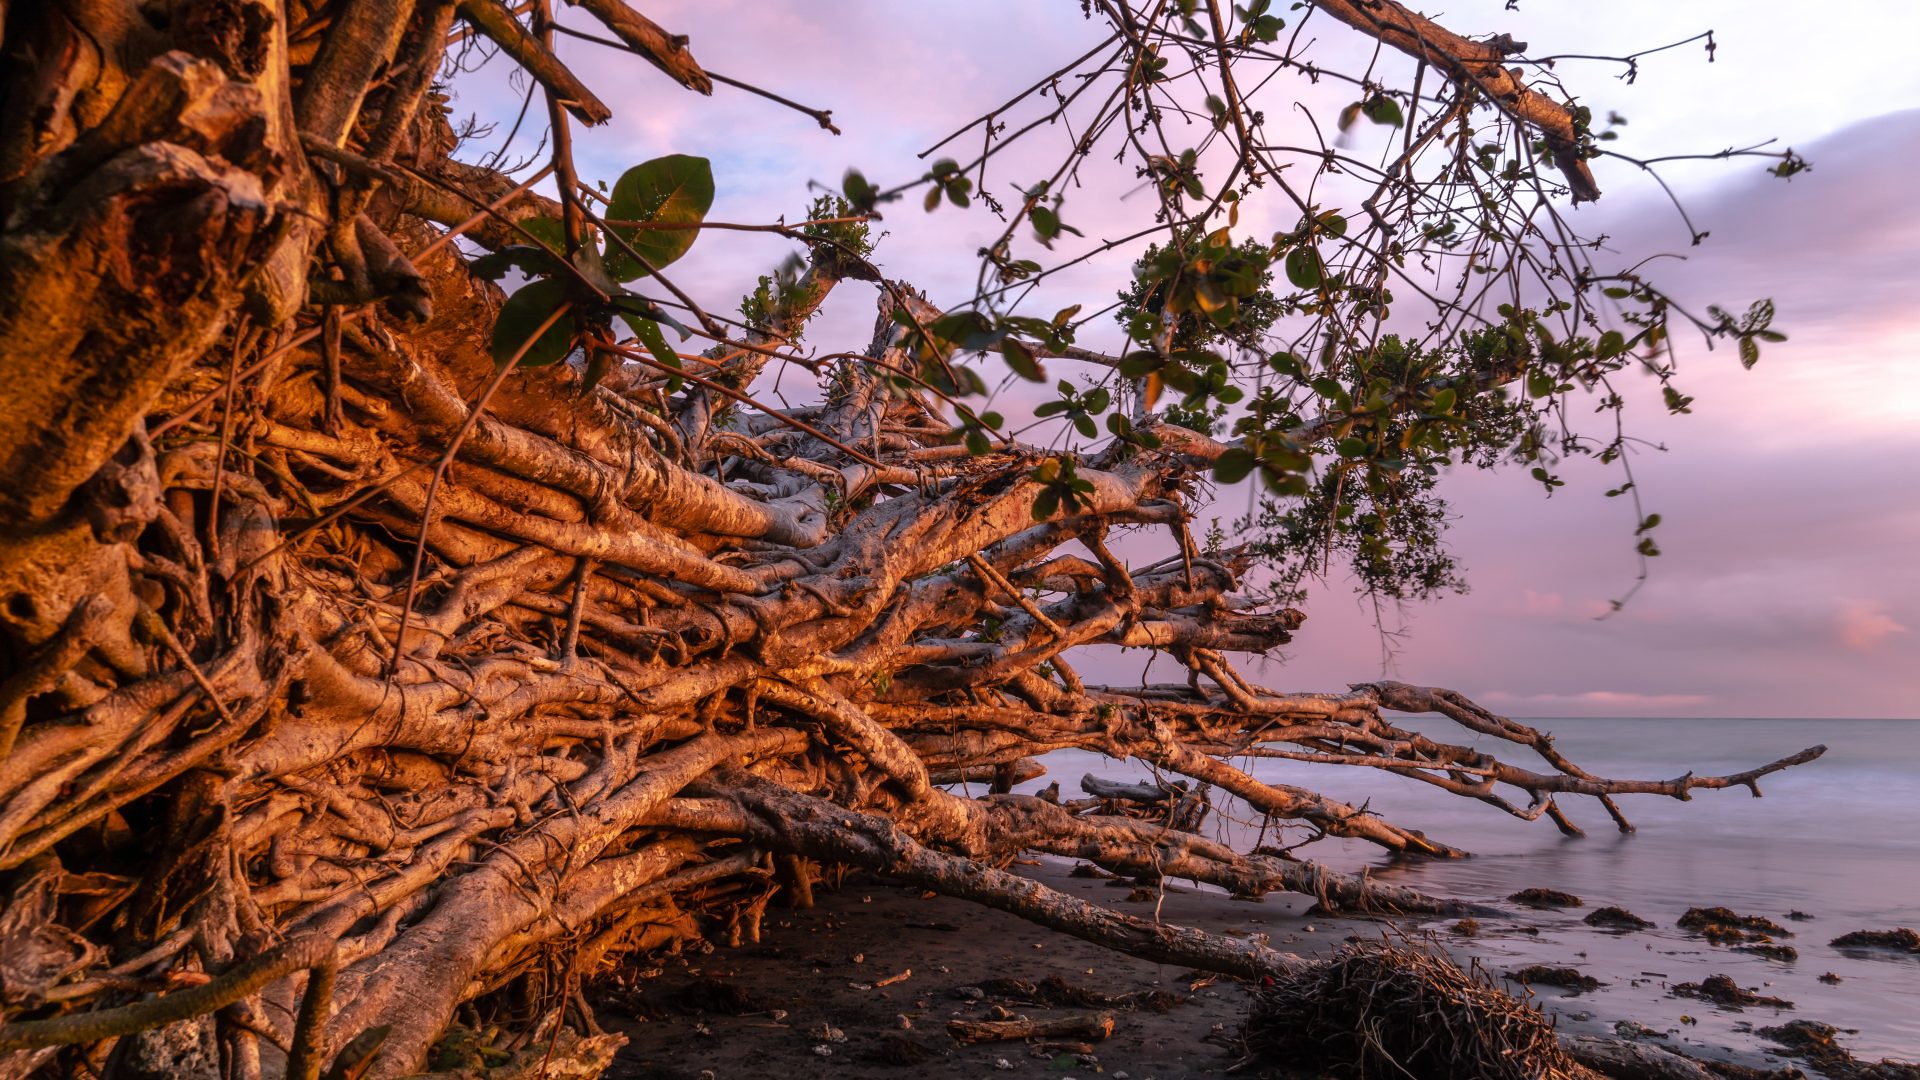 A large tree lies fallen on a beach at sunset.